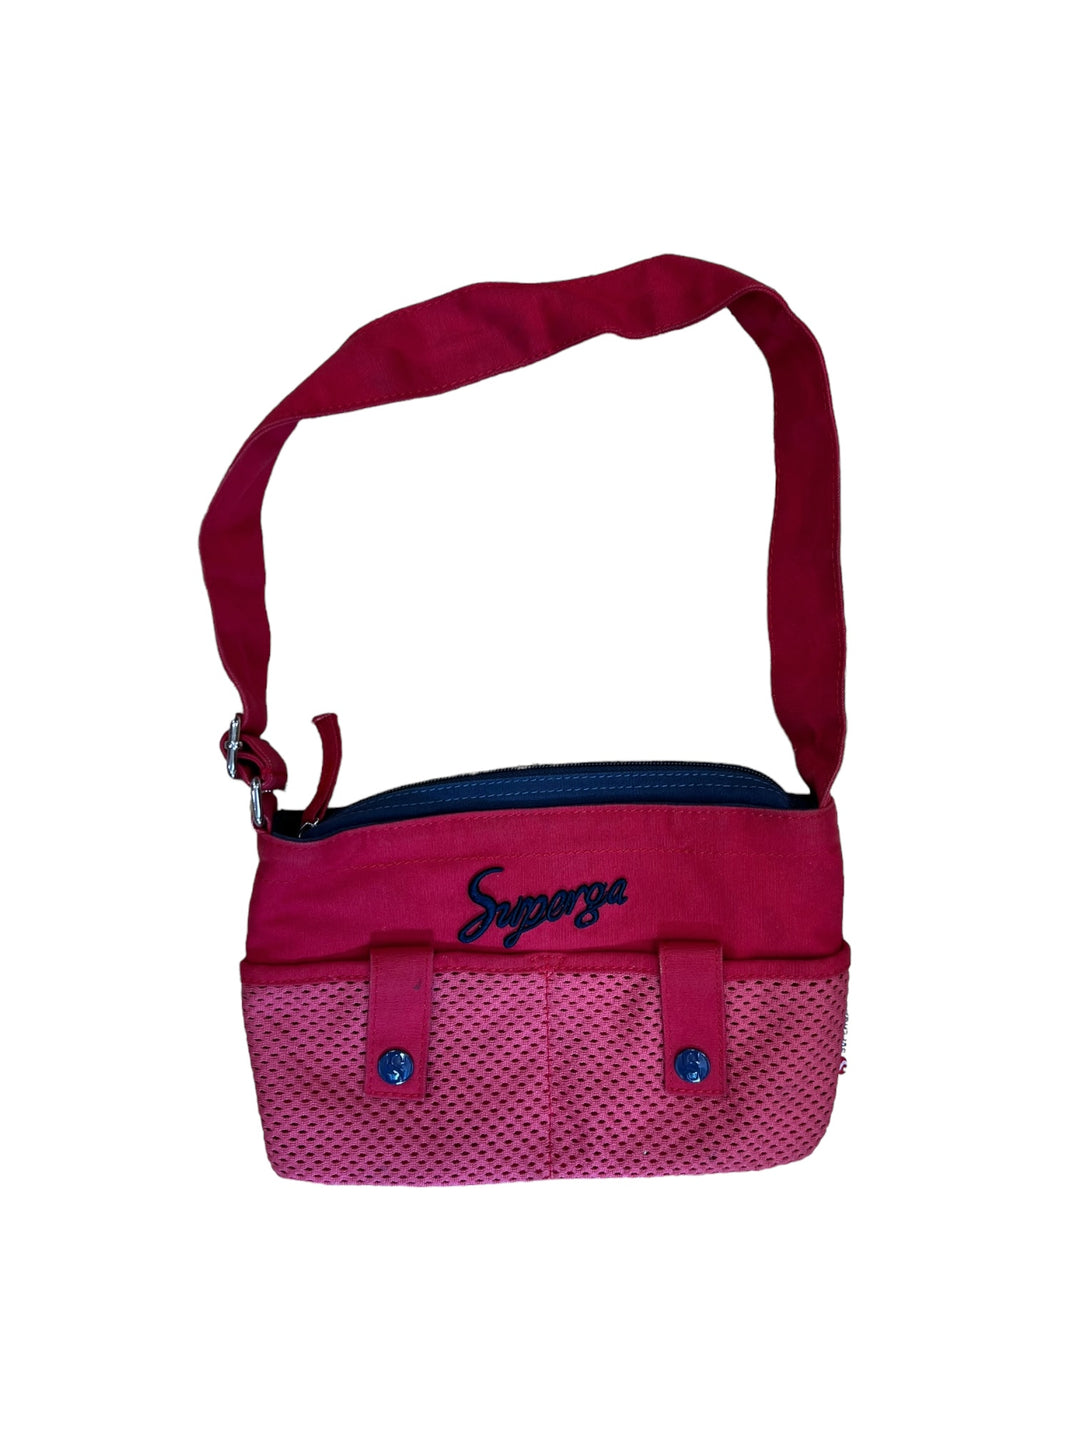 Superga vintage mini shoulder bag